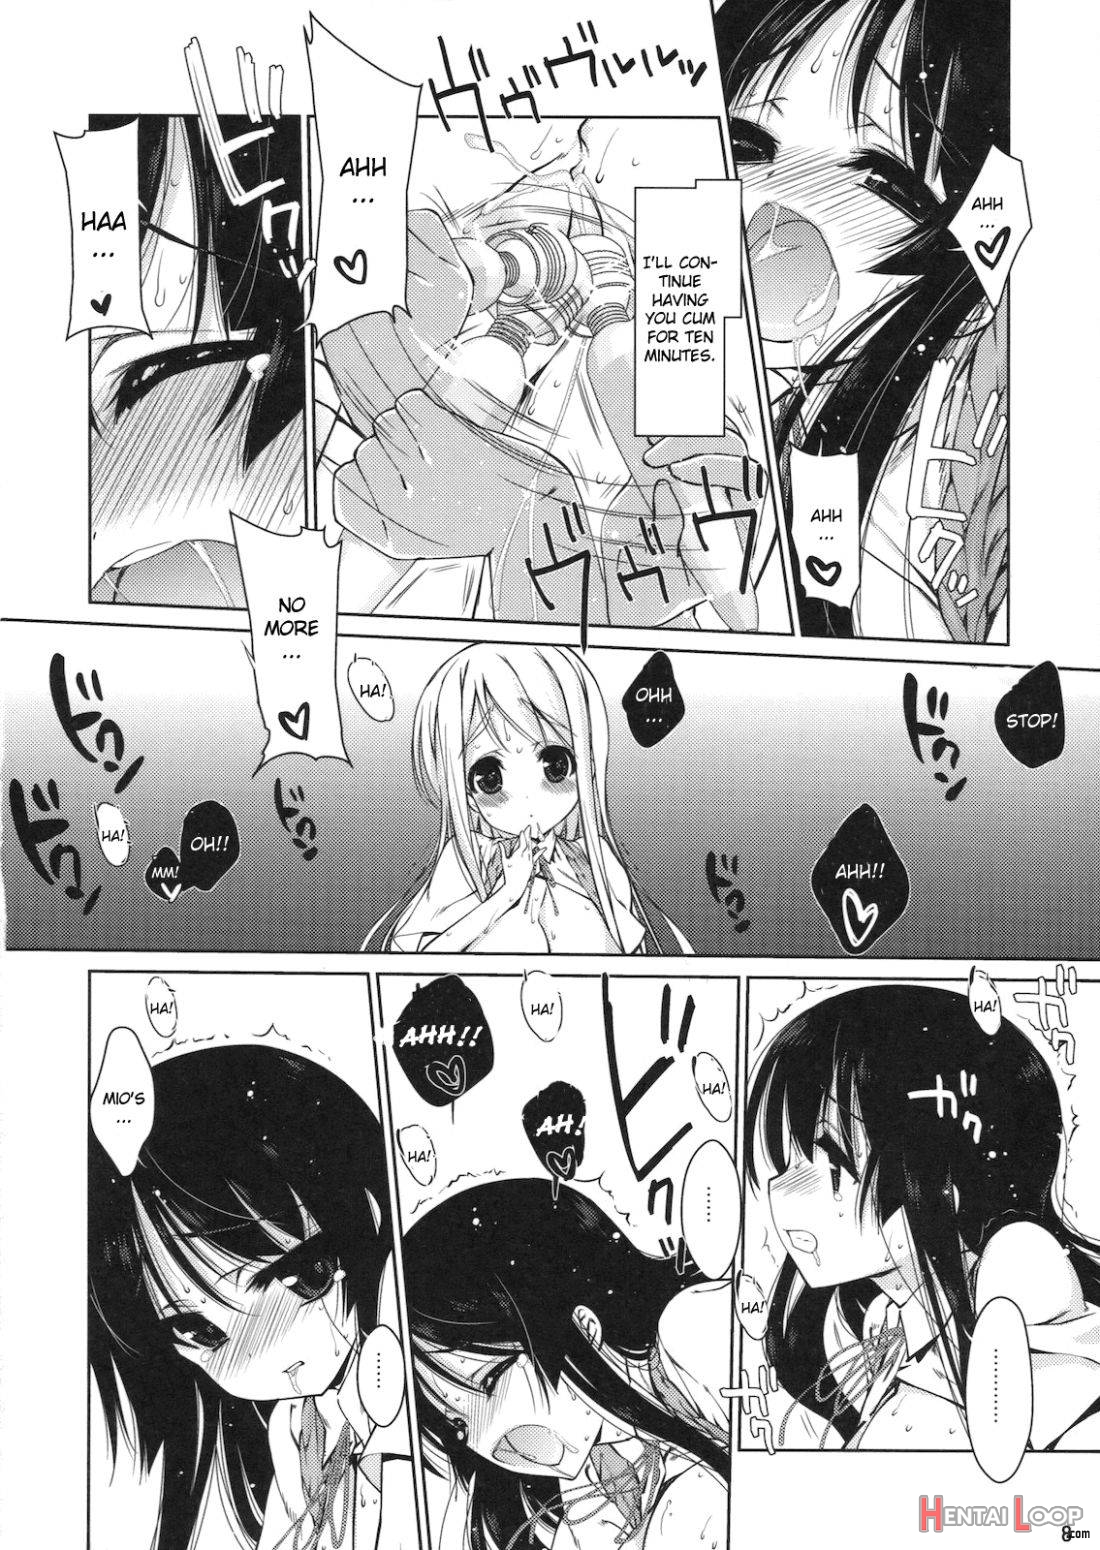 Mio-tan! 6 Mugi-chan to page 5